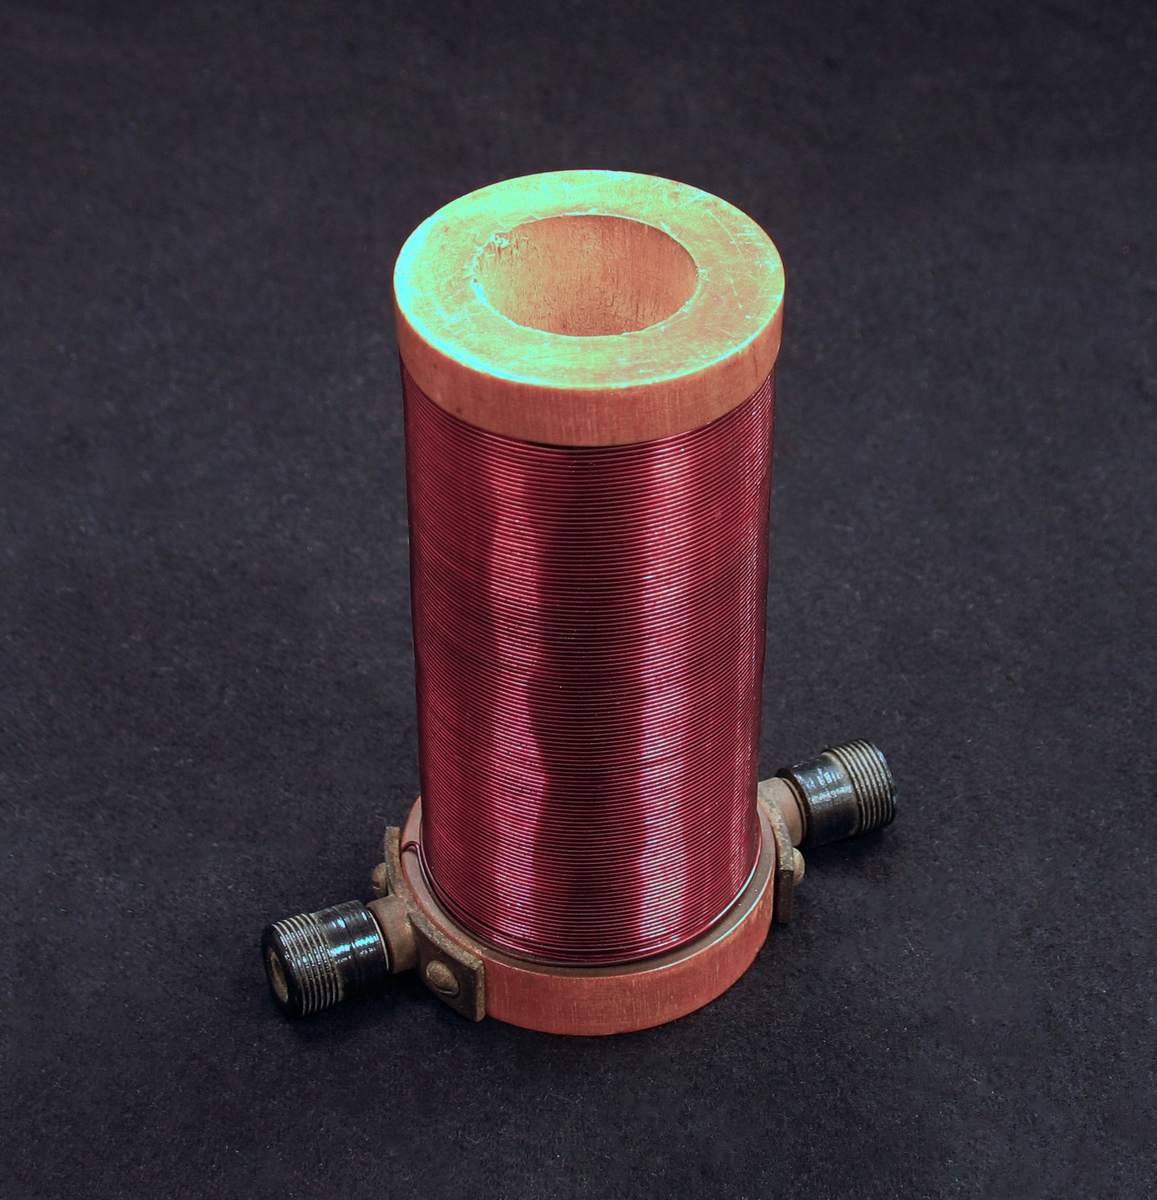 En cylinderformad elektromagnet i trä och metall med hål rakt igenom.
 Har troligen använts i fysikundervisning. 

Undervisningsmaterial från skolor i Vänersborg.